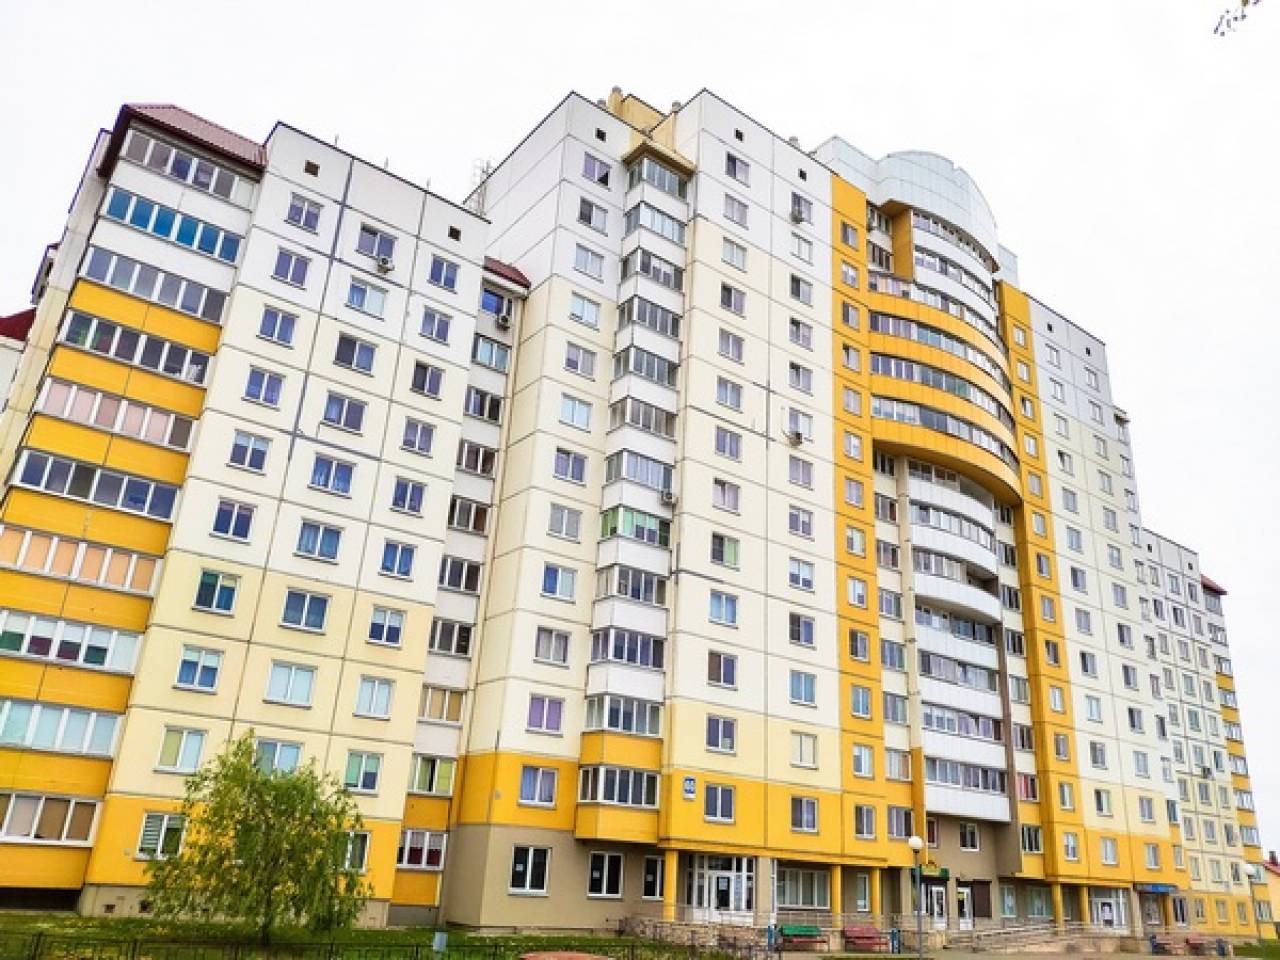 Налоговая рассказала, сколько белорусов владеют двумя и более квартирами